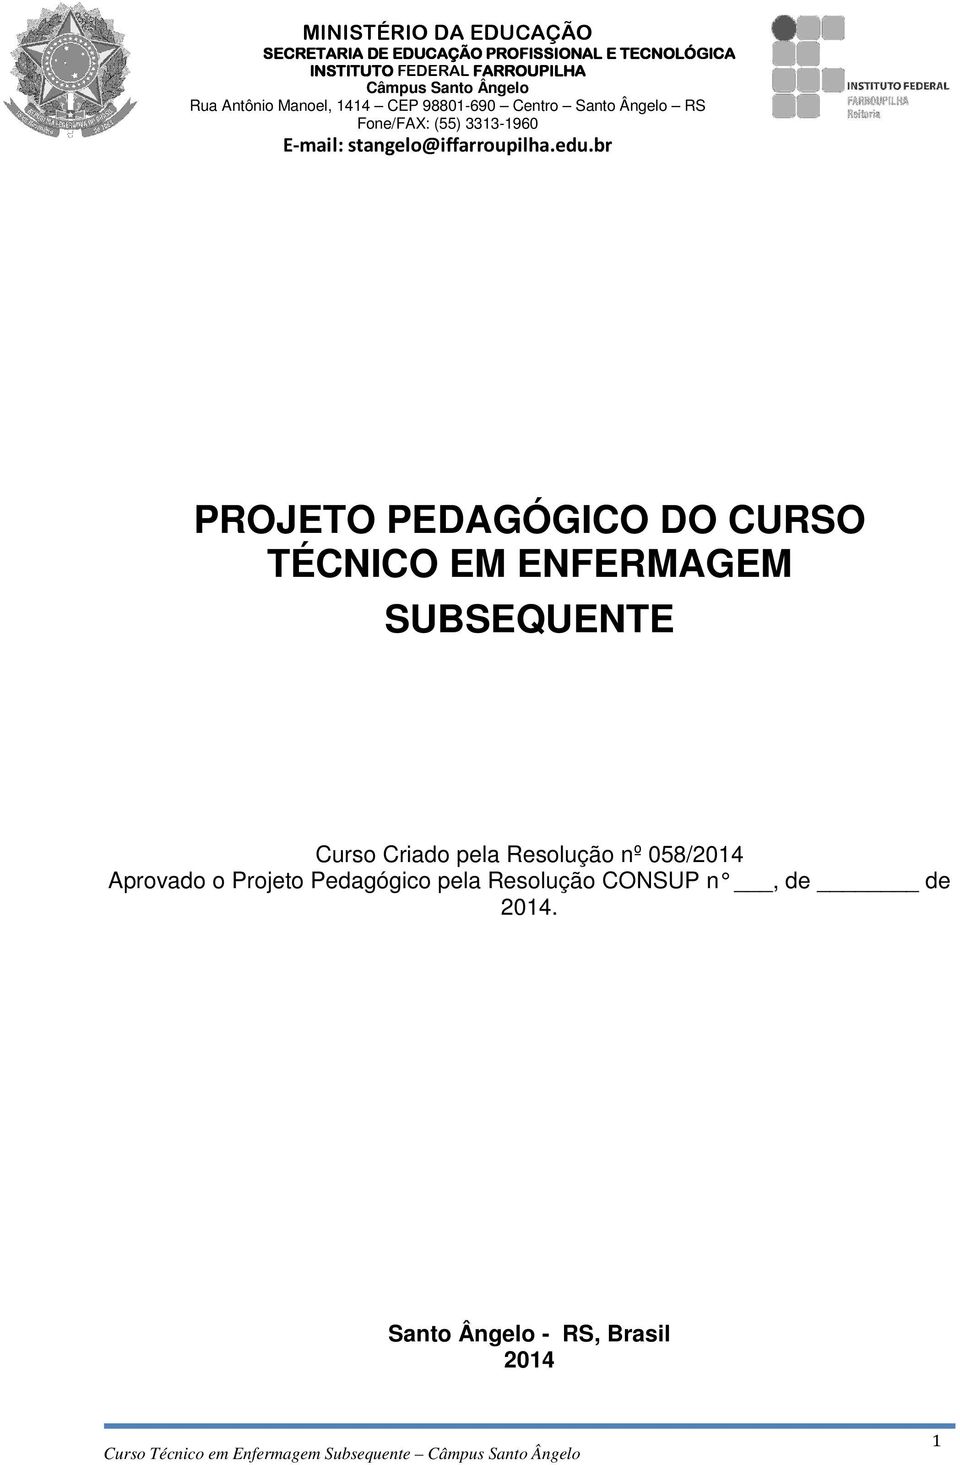 Pedagógico pela Resolução CONSUP n, de de 2014.